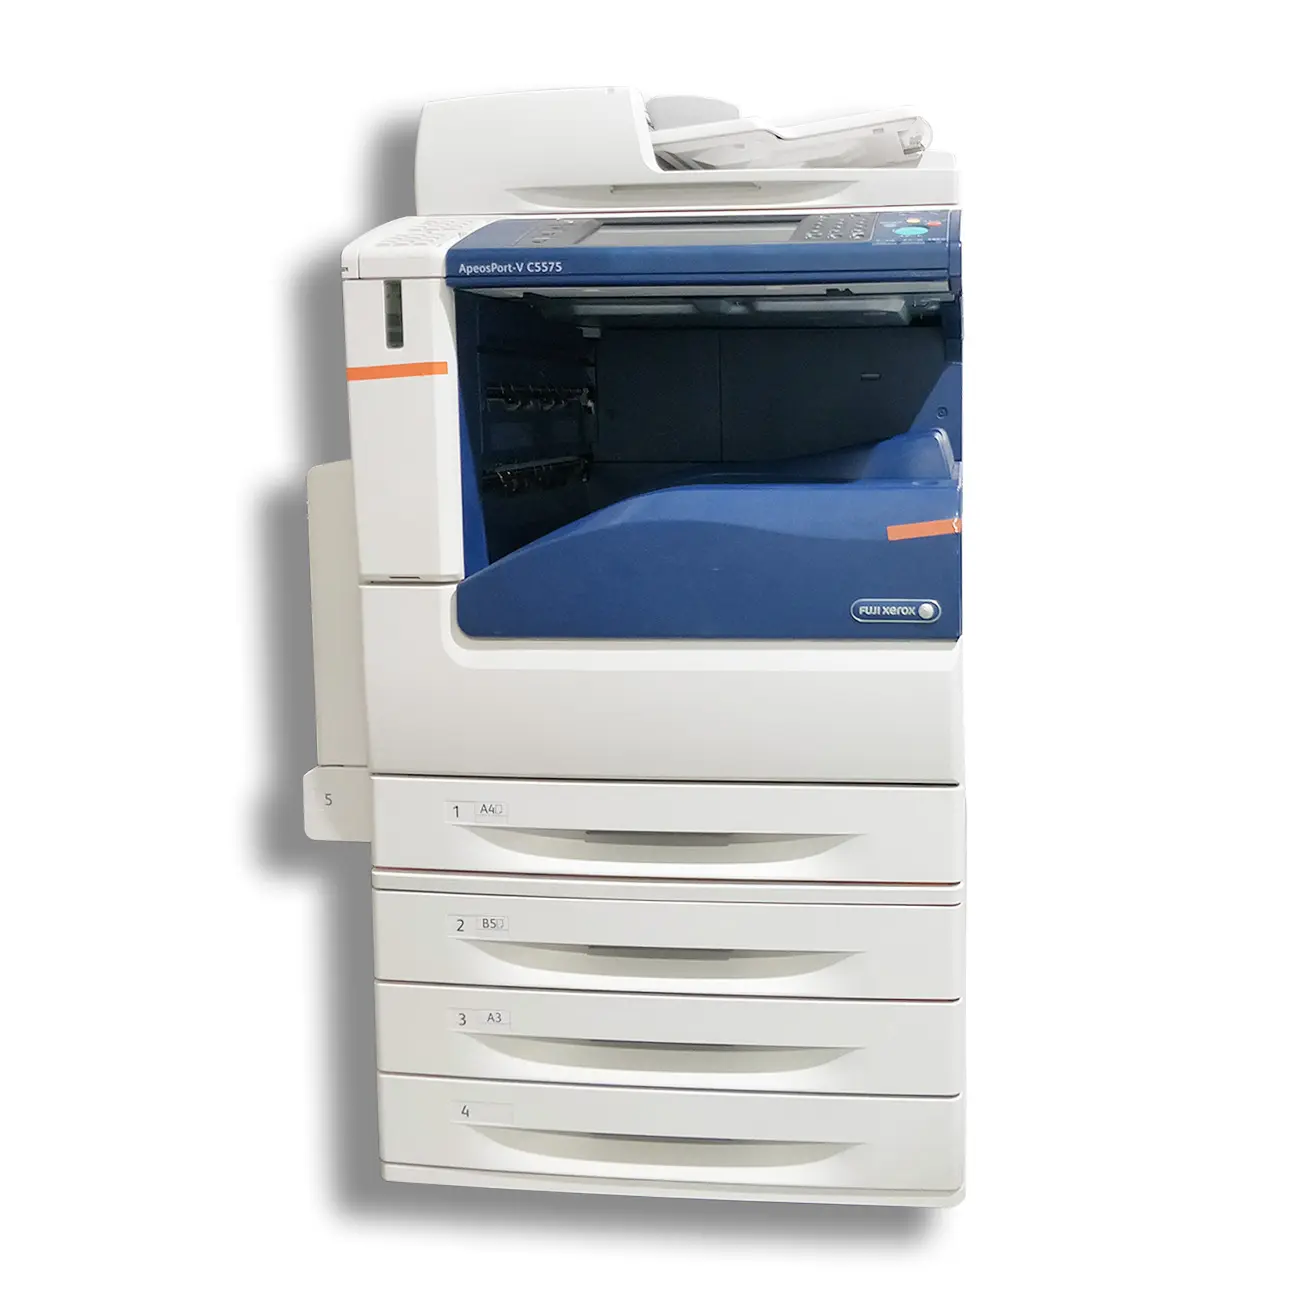 Принтер, сканер и фотокопировальная машина, Восстановленный цветной фотокопировальный аппарат для Xerox V C5575